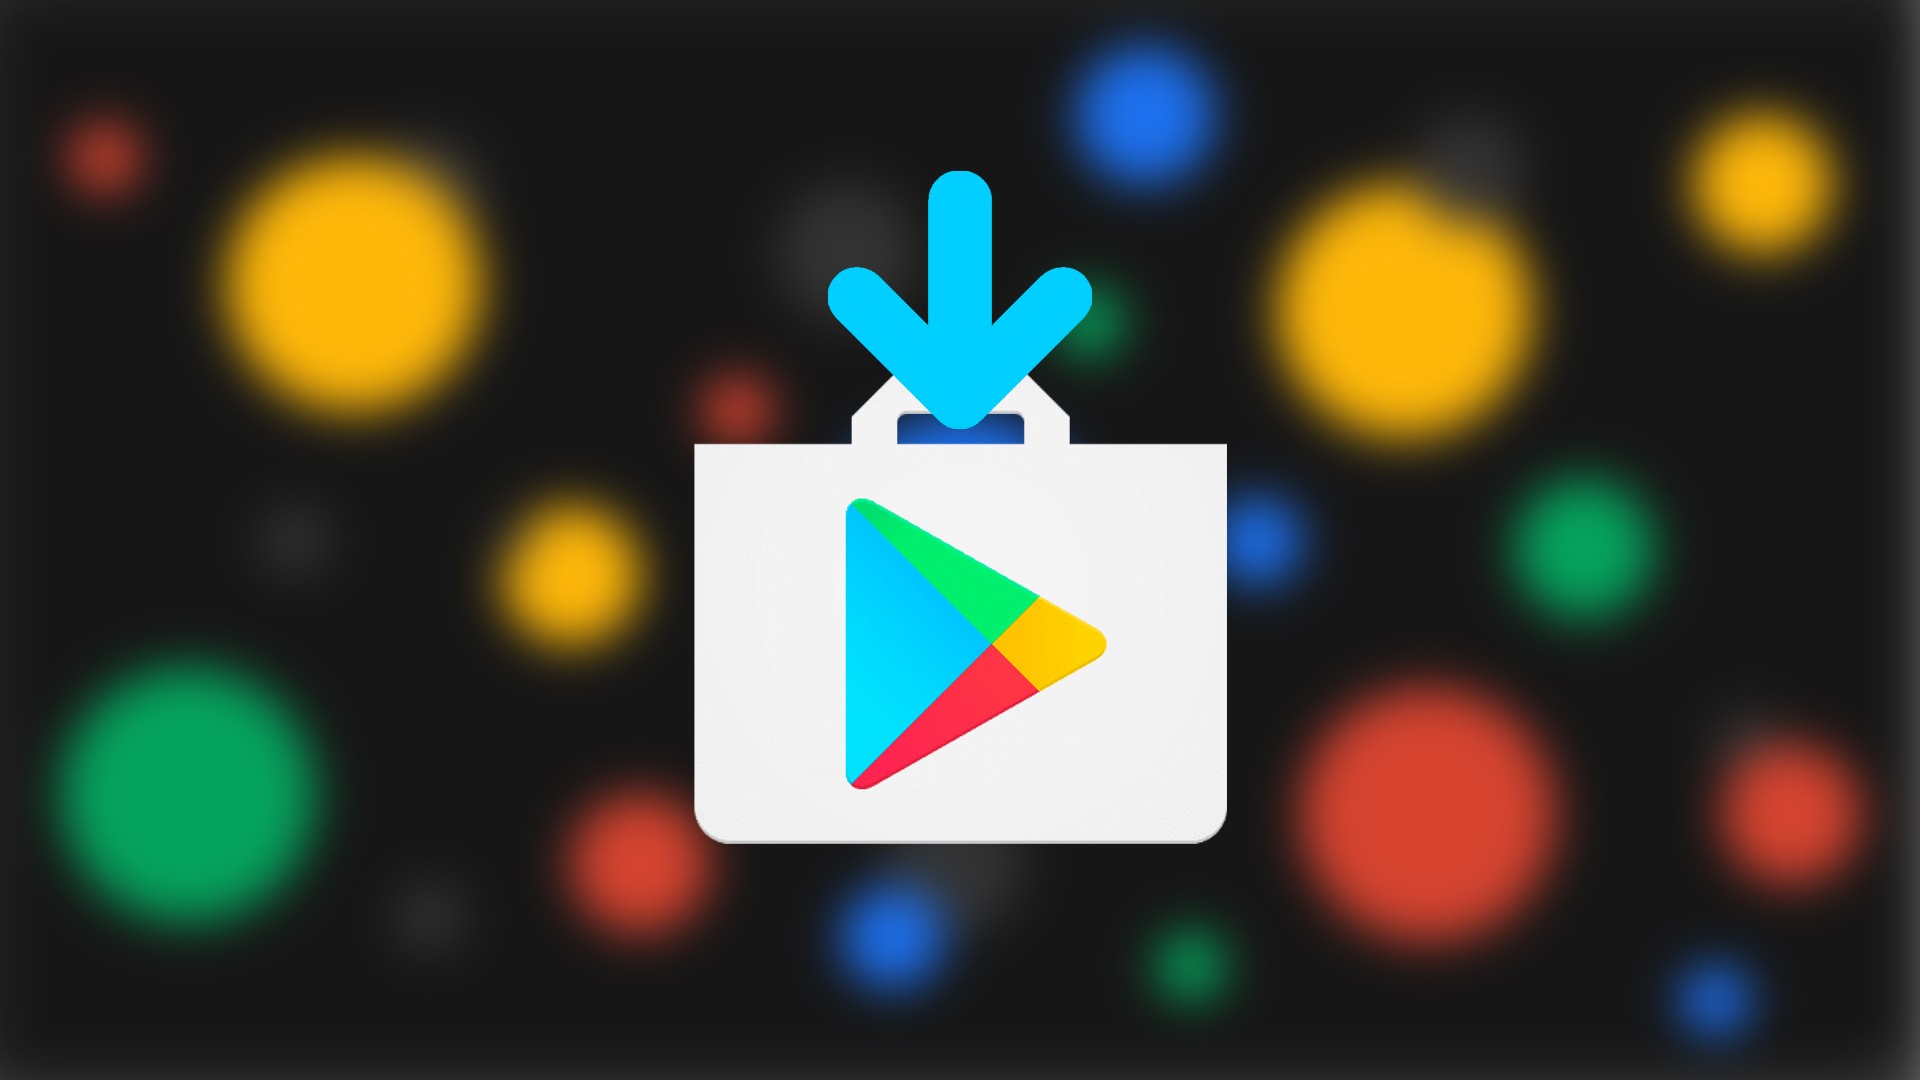 Google Play Store: Já podes instalar a nova versão da App no teu